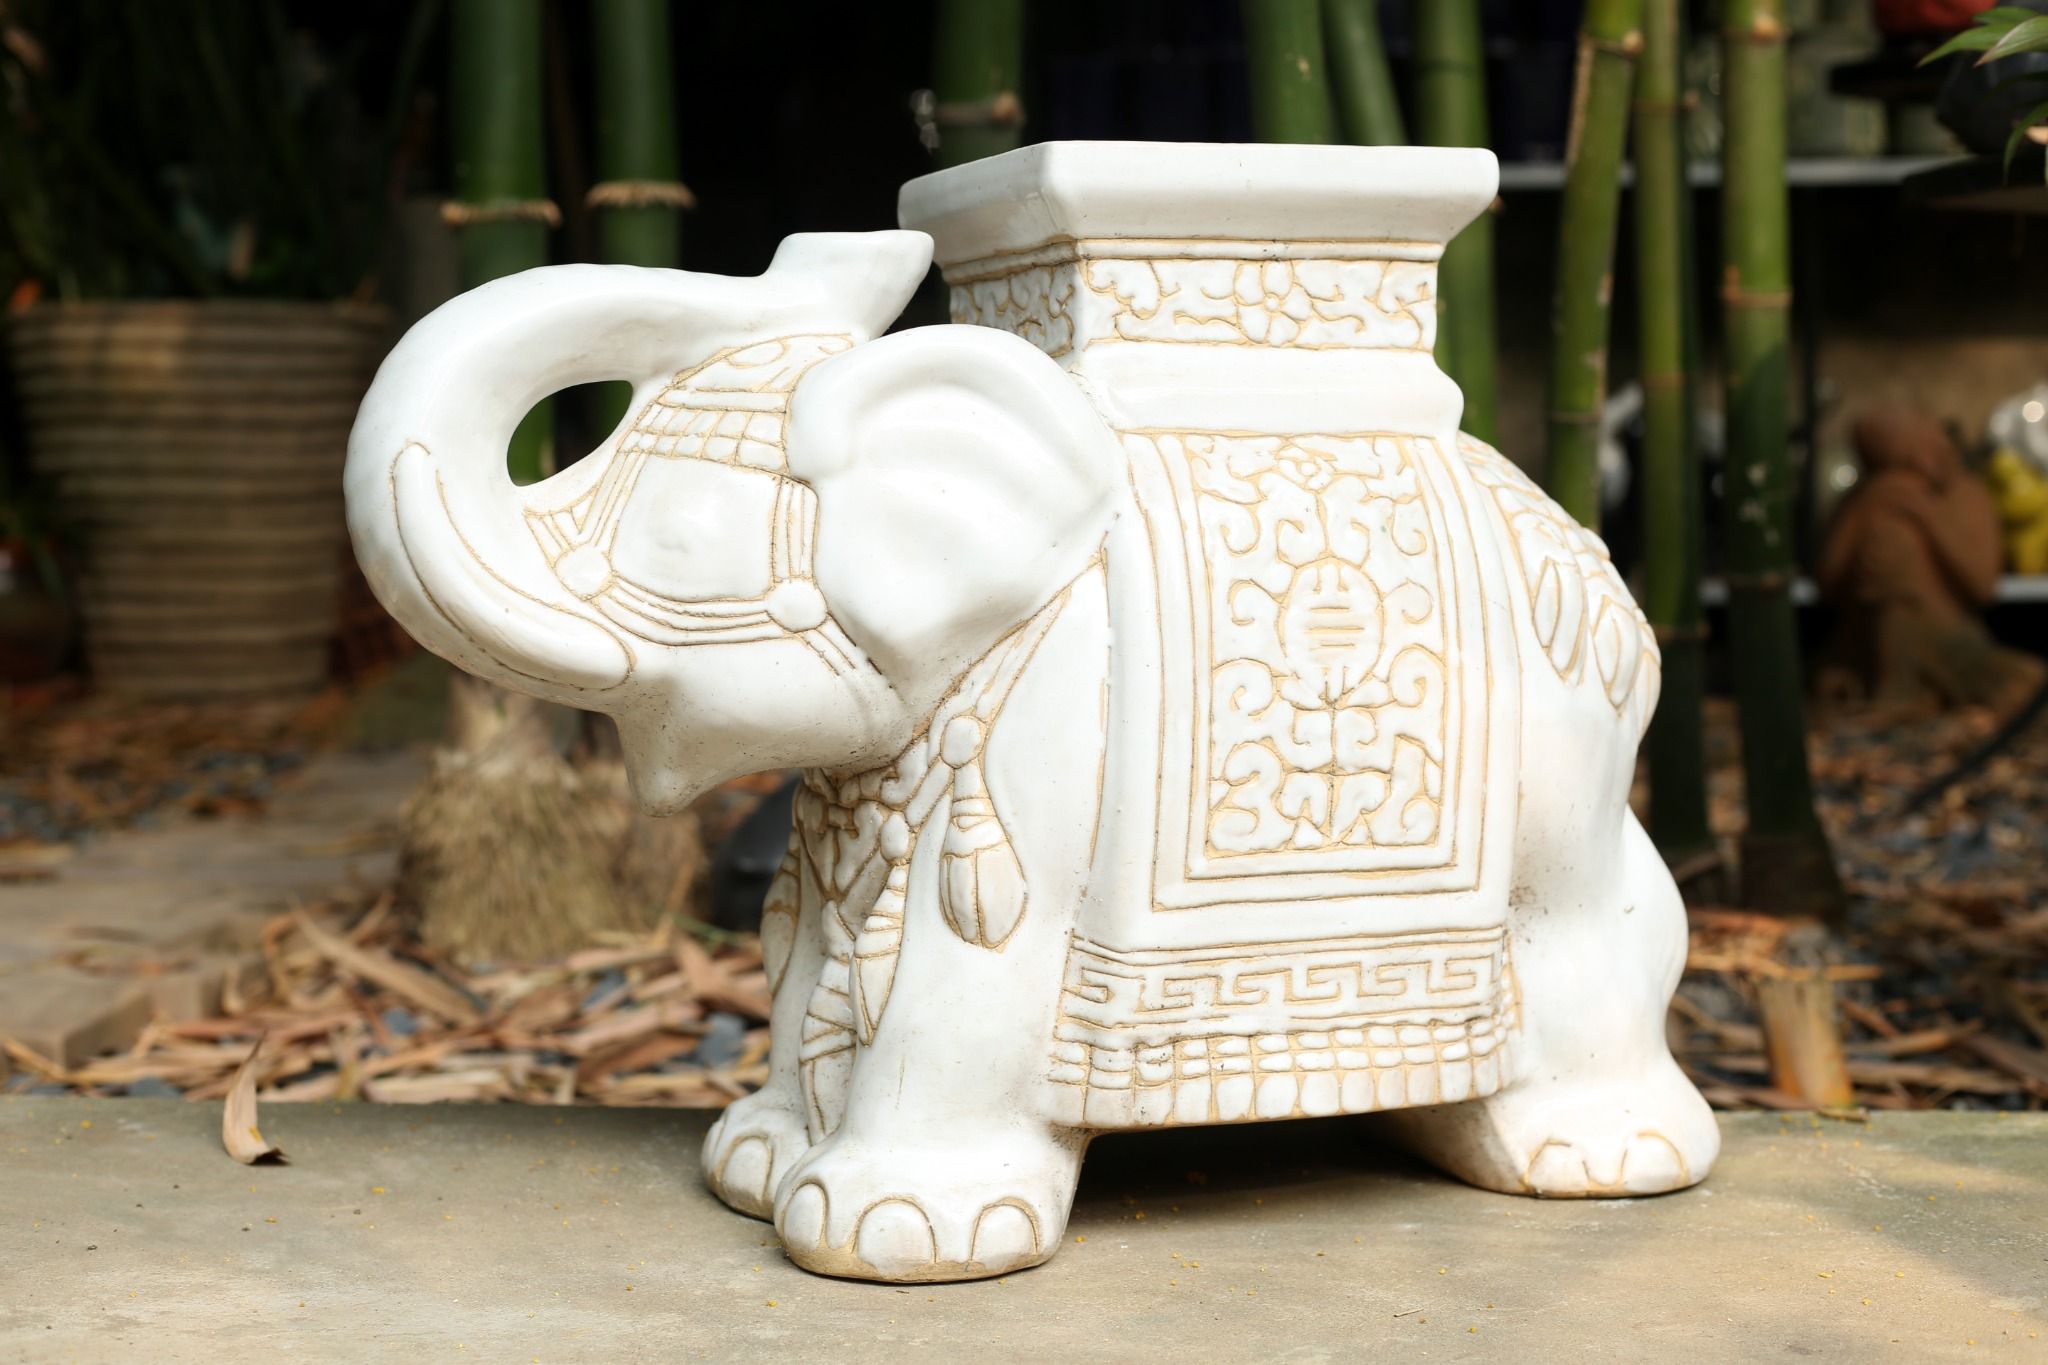  Đôn voi truyền thống, gốm Nam Bộ, gợi nhớ ký ức, trắng và nhiều màu sắc, C43 x R50cm 